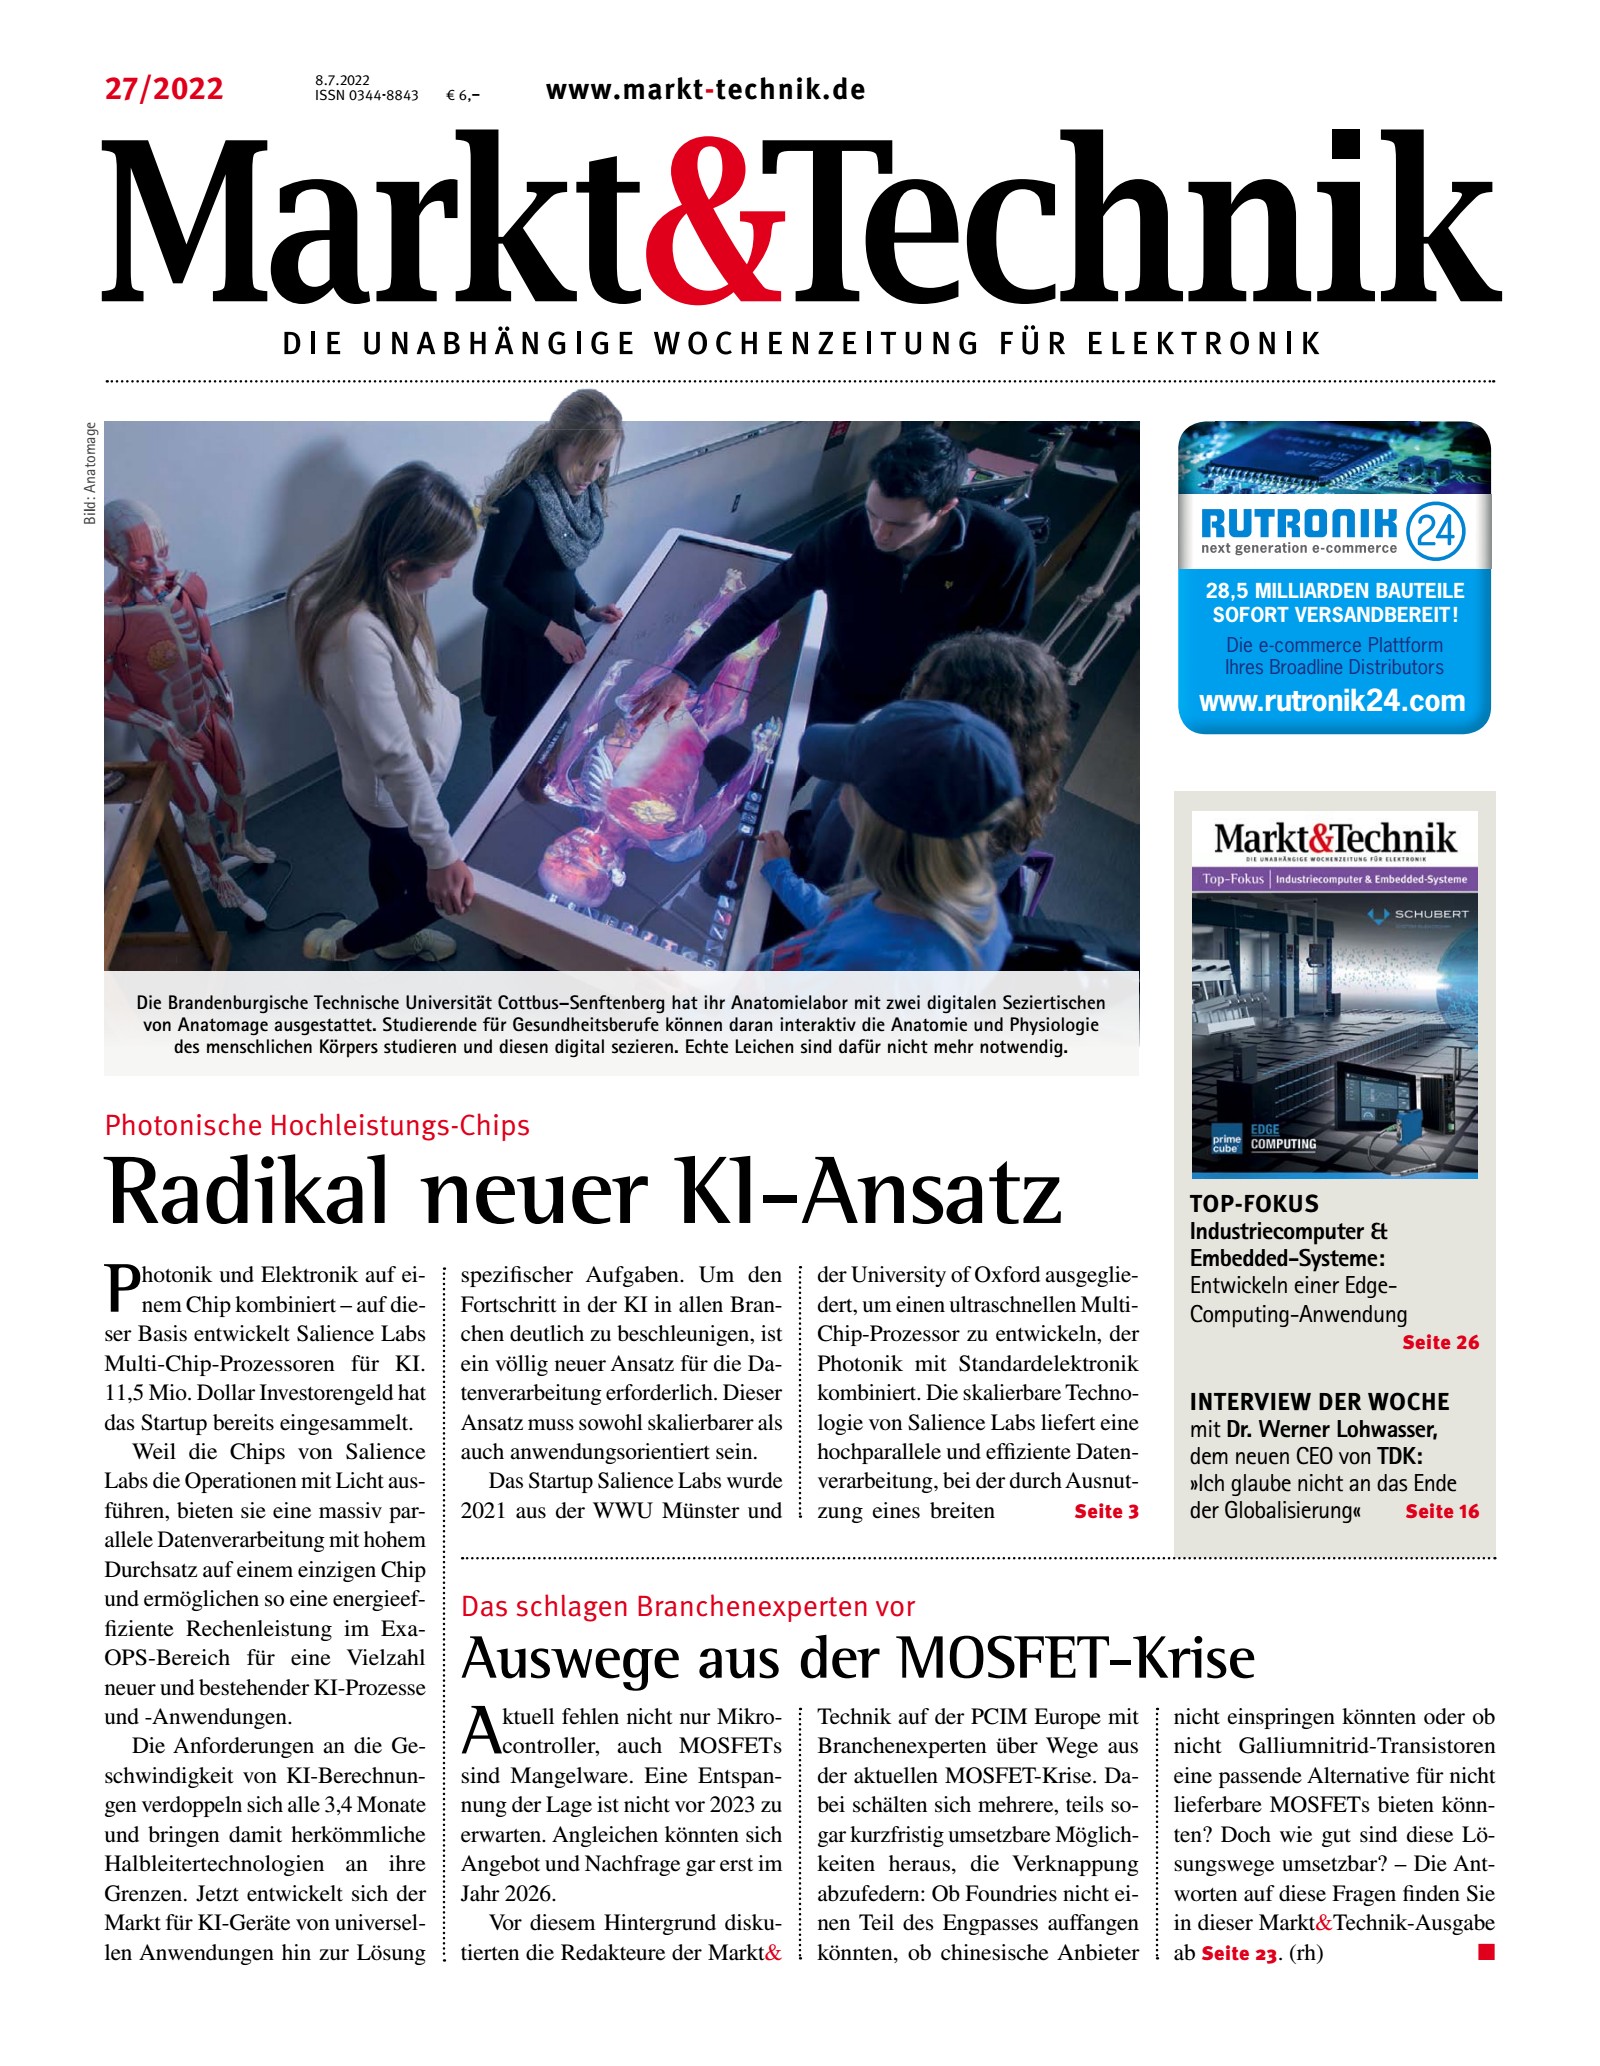 Markt&Technik 27/2022 Digital